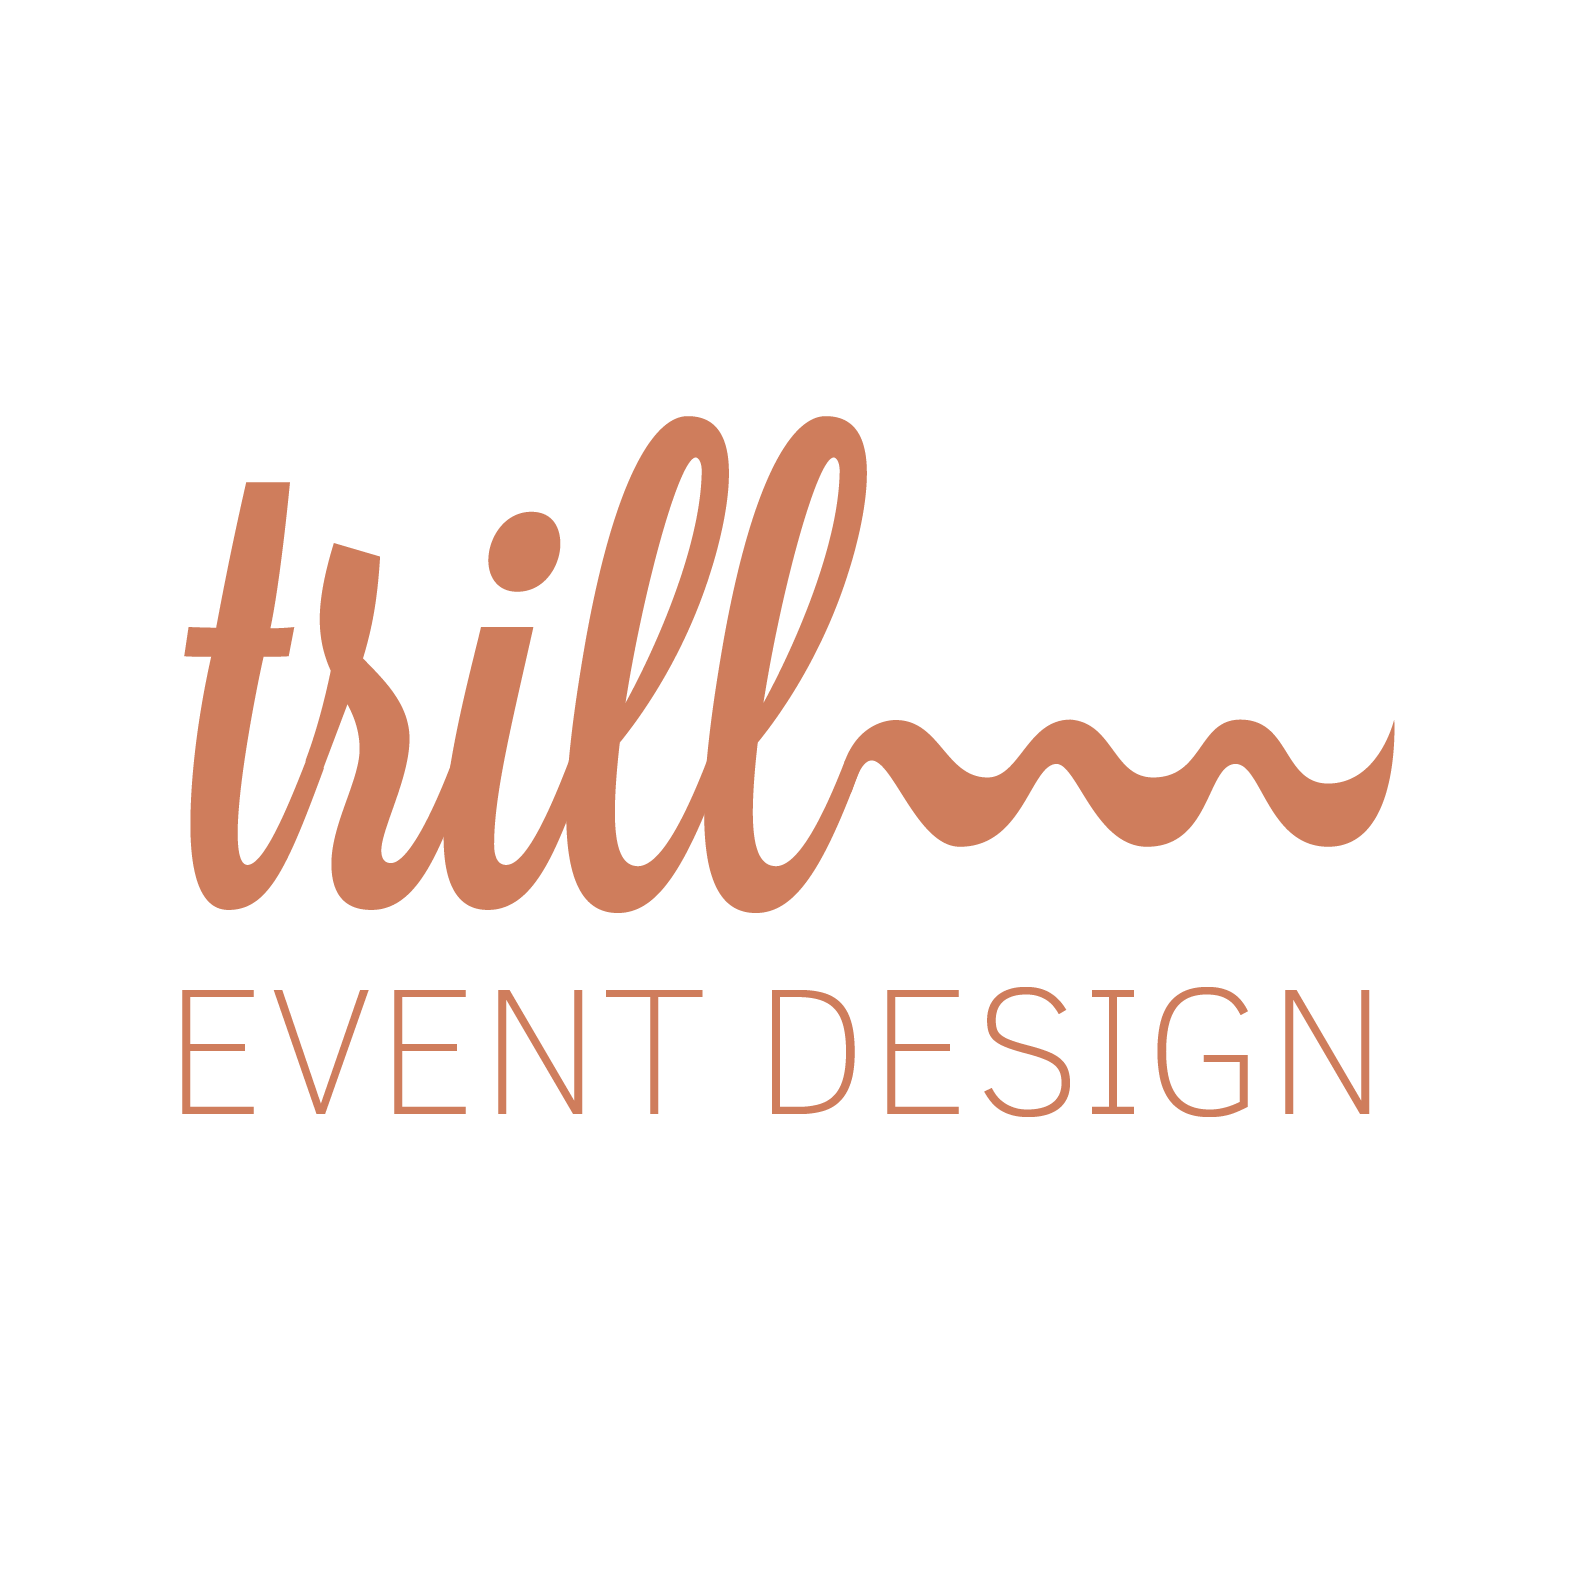 Trill Event Design